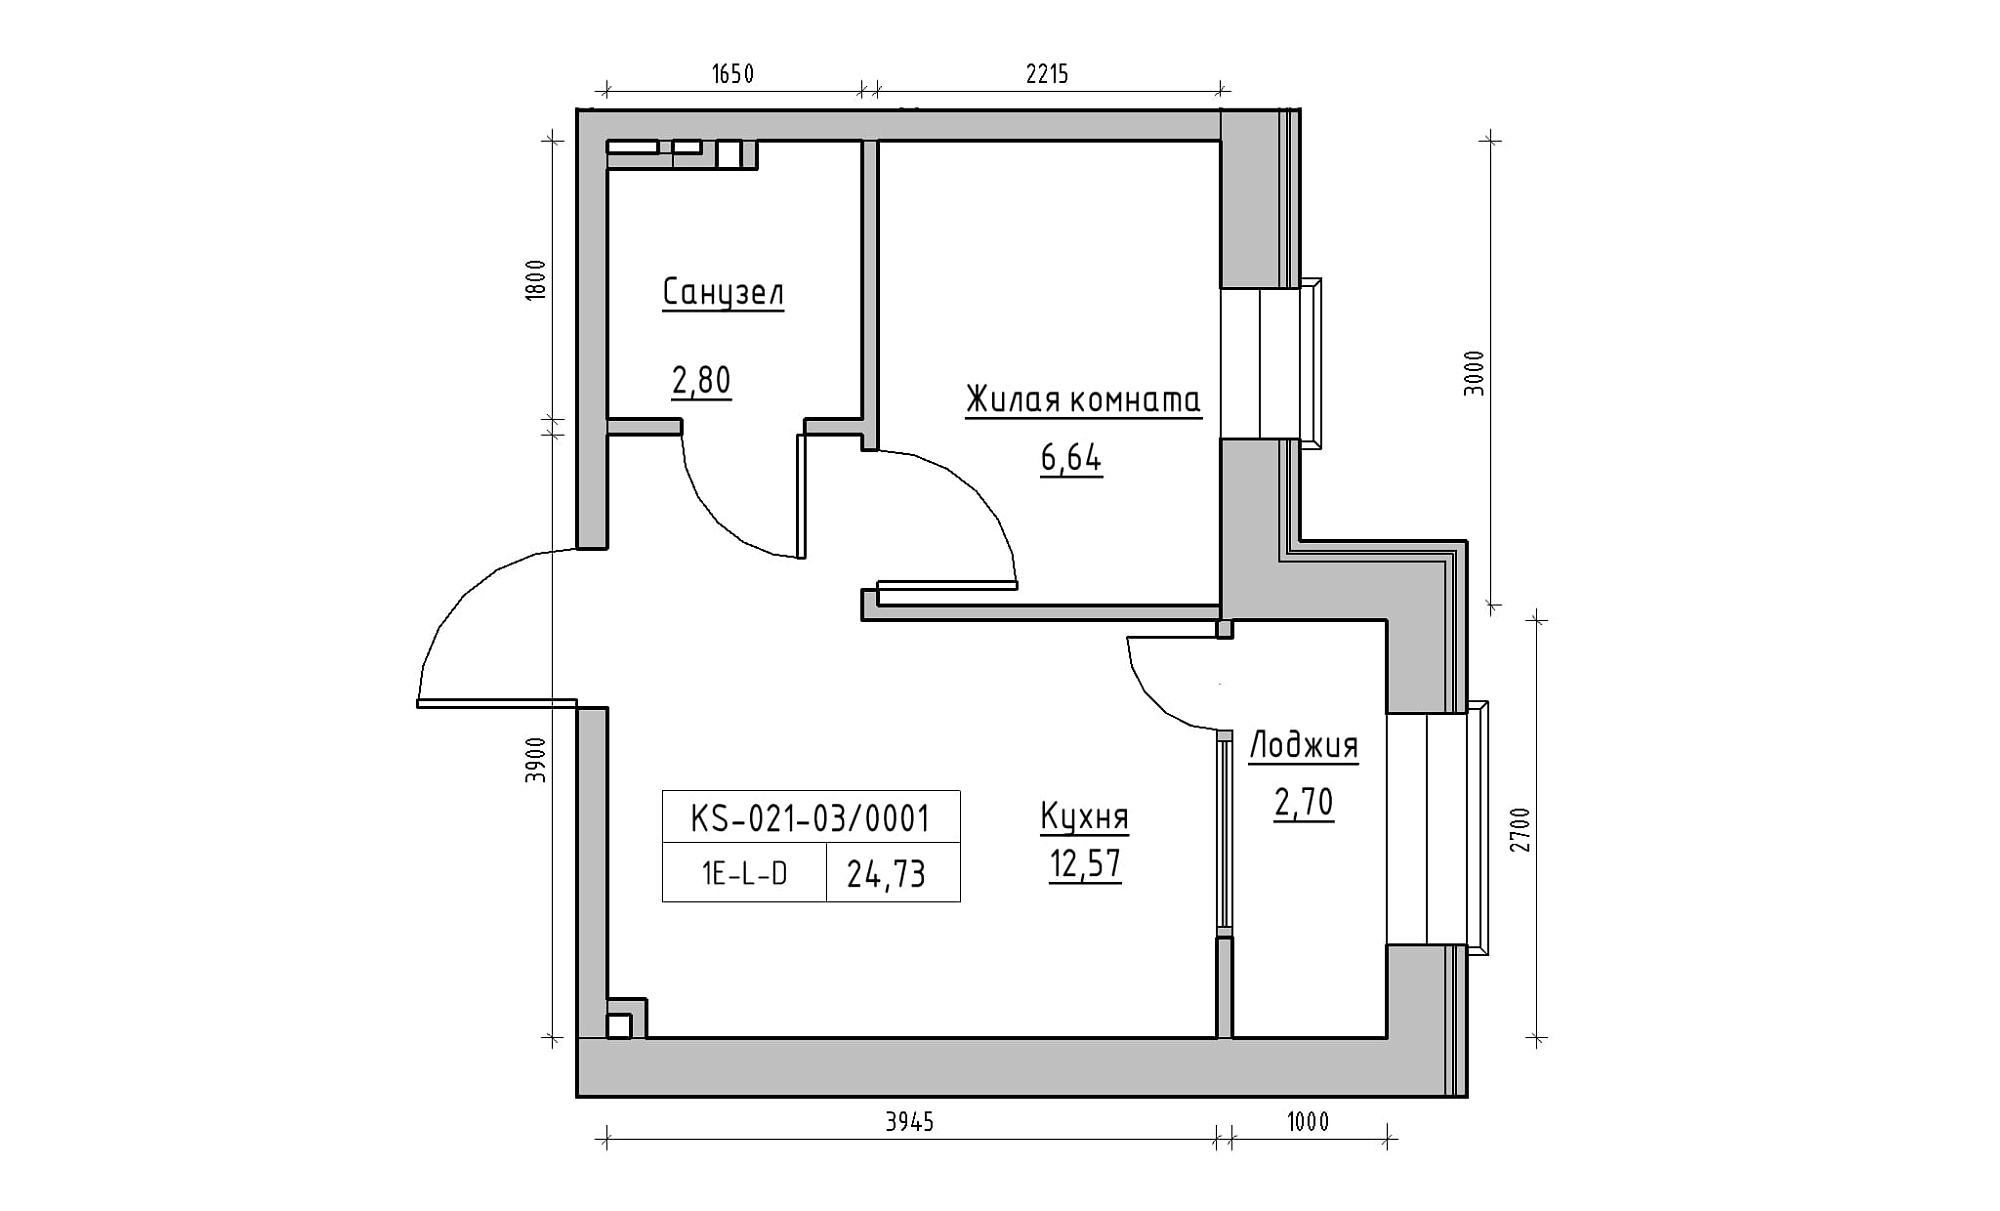 Планування 1-к квартира площею 24.73м2, KS-021-03/0001.